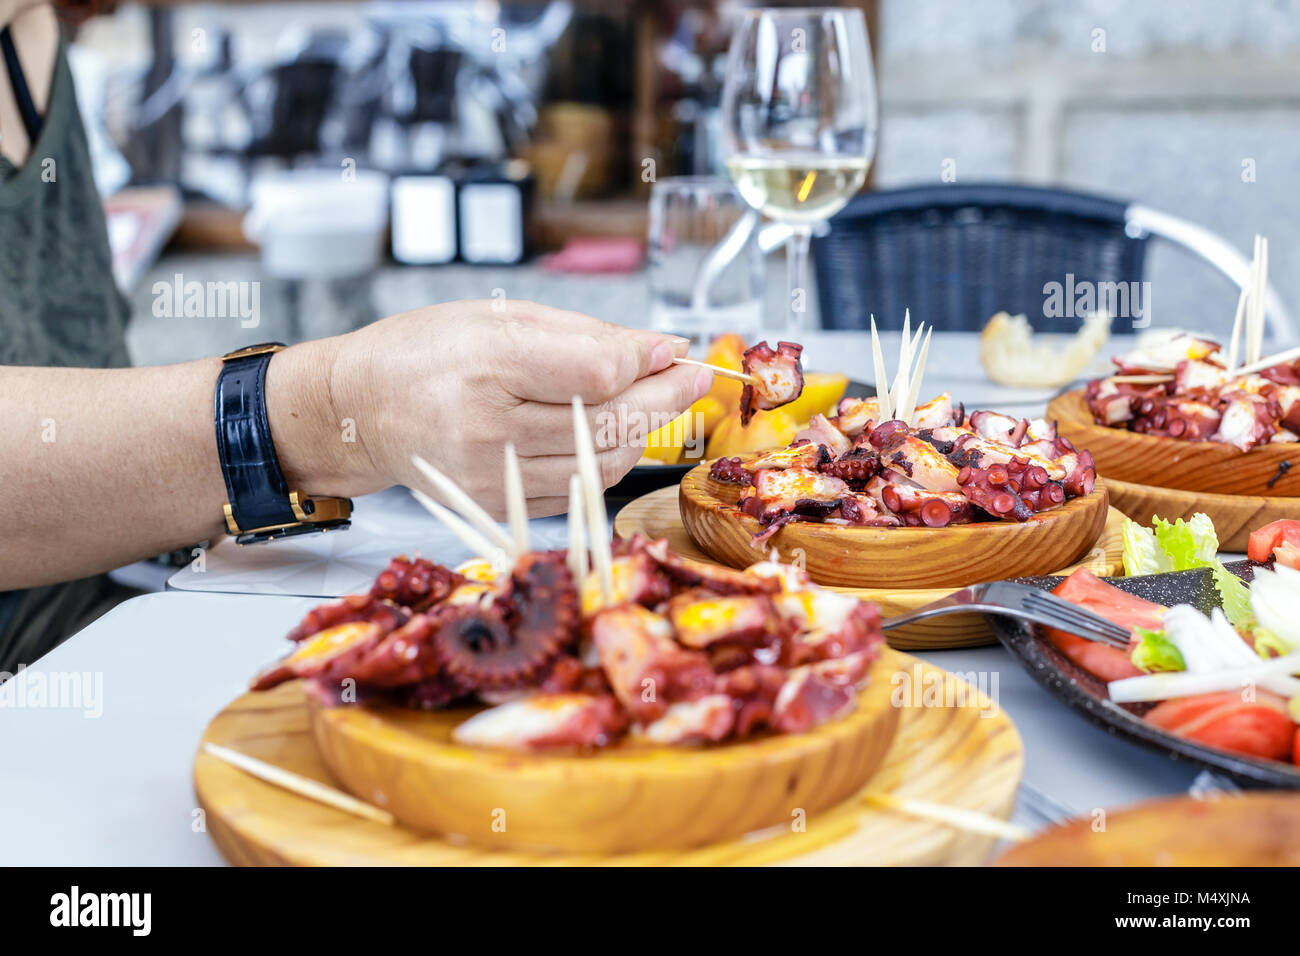 Les personnes mangeant Pulpo a la gallega avec pommes de terre. Poulpe galicien plats. Plats célèbres de la Galice, Espagne. Banque D'Images